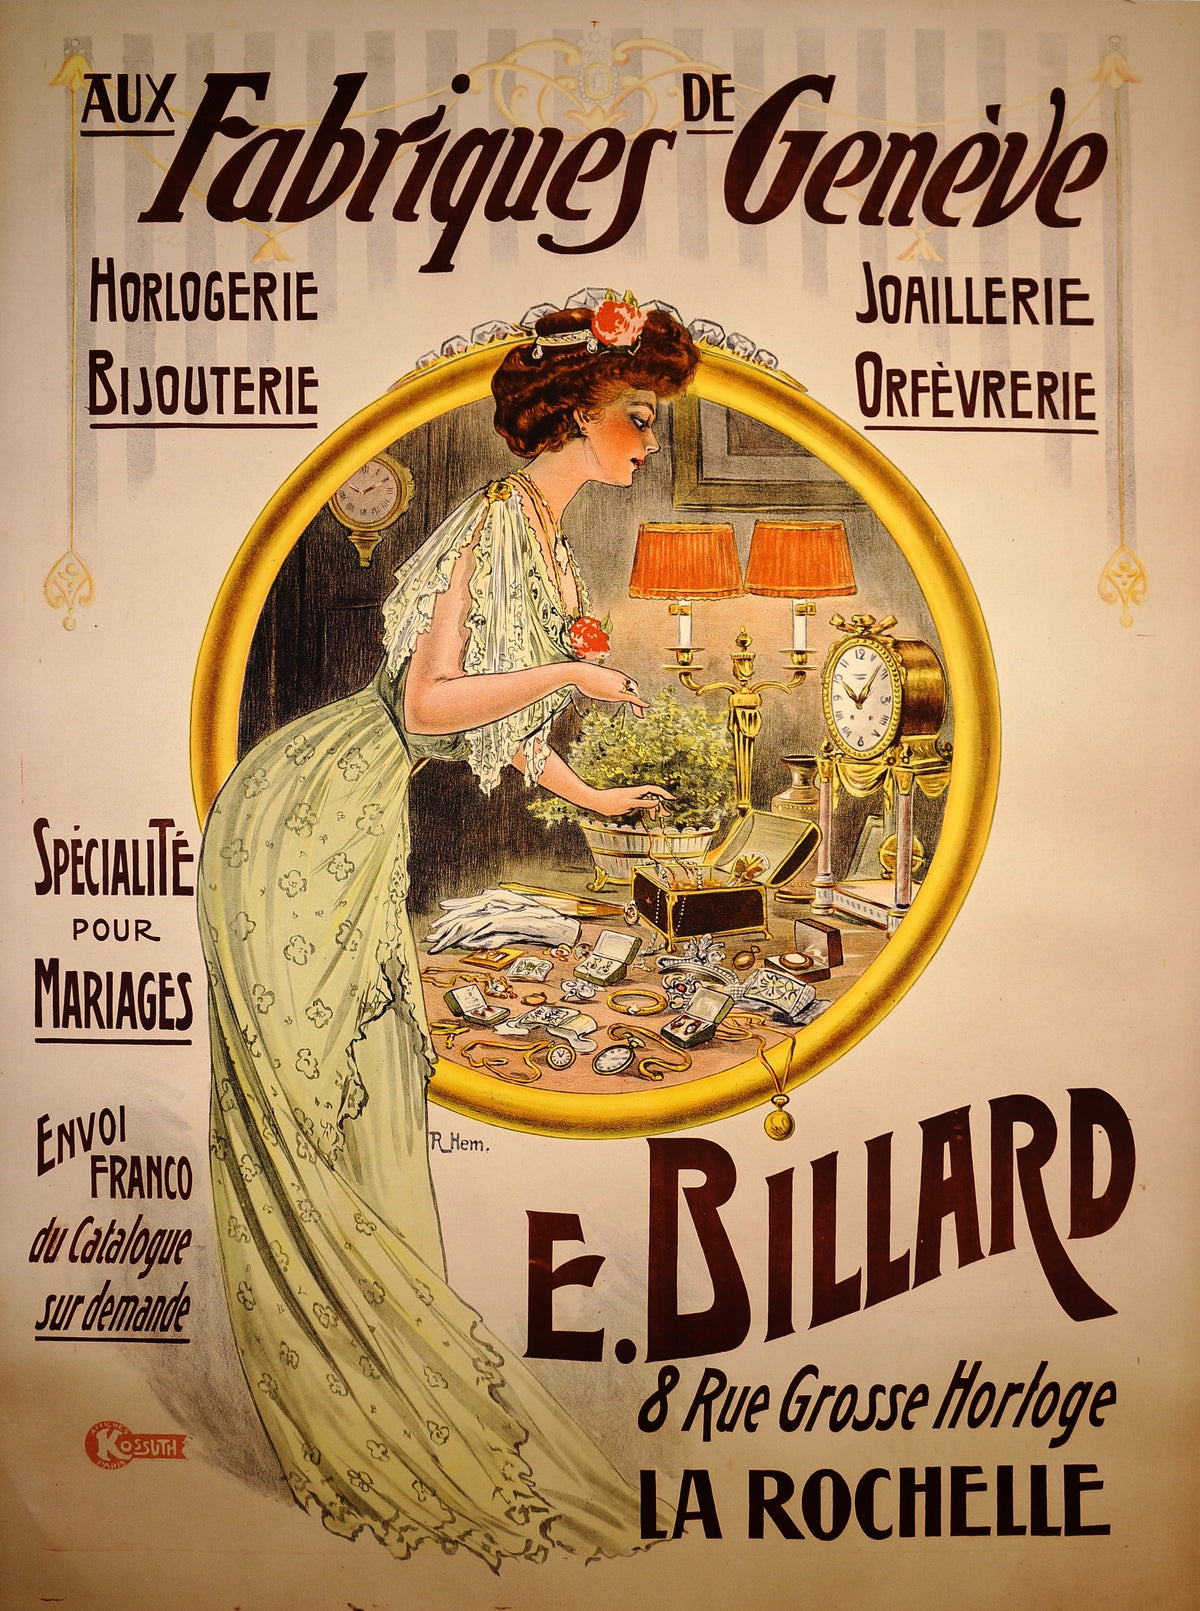 Fabriques Geneve - Authentic Vintage Poster